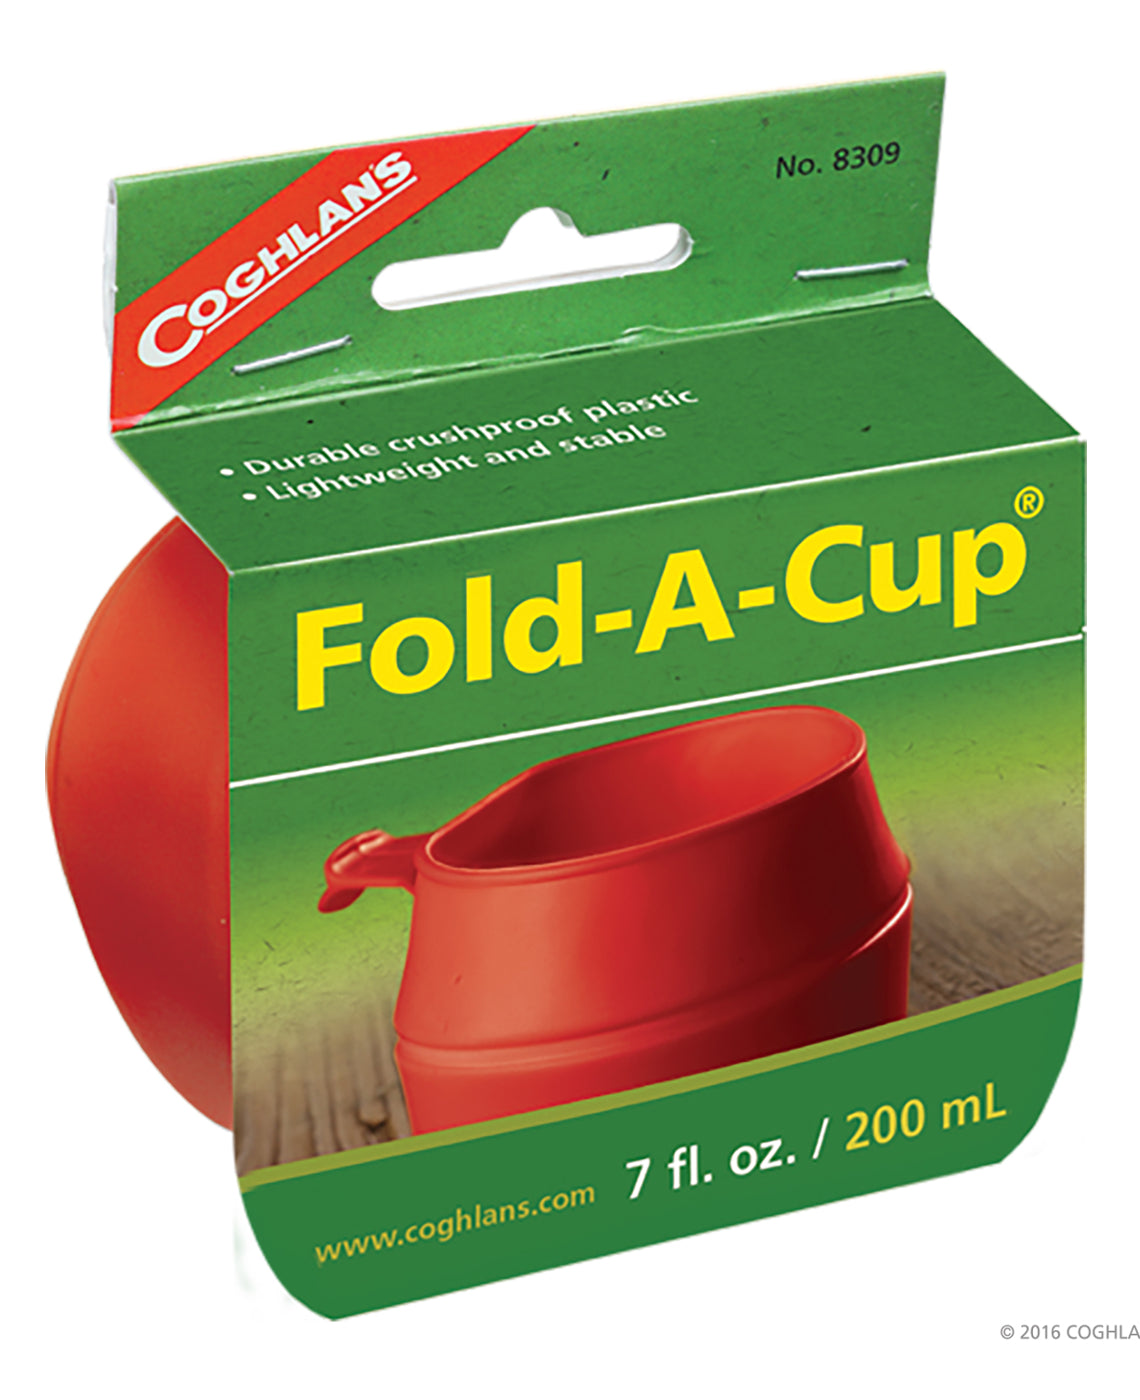 Se Coghlans Fold-a-Cup hos RejseGear.dk